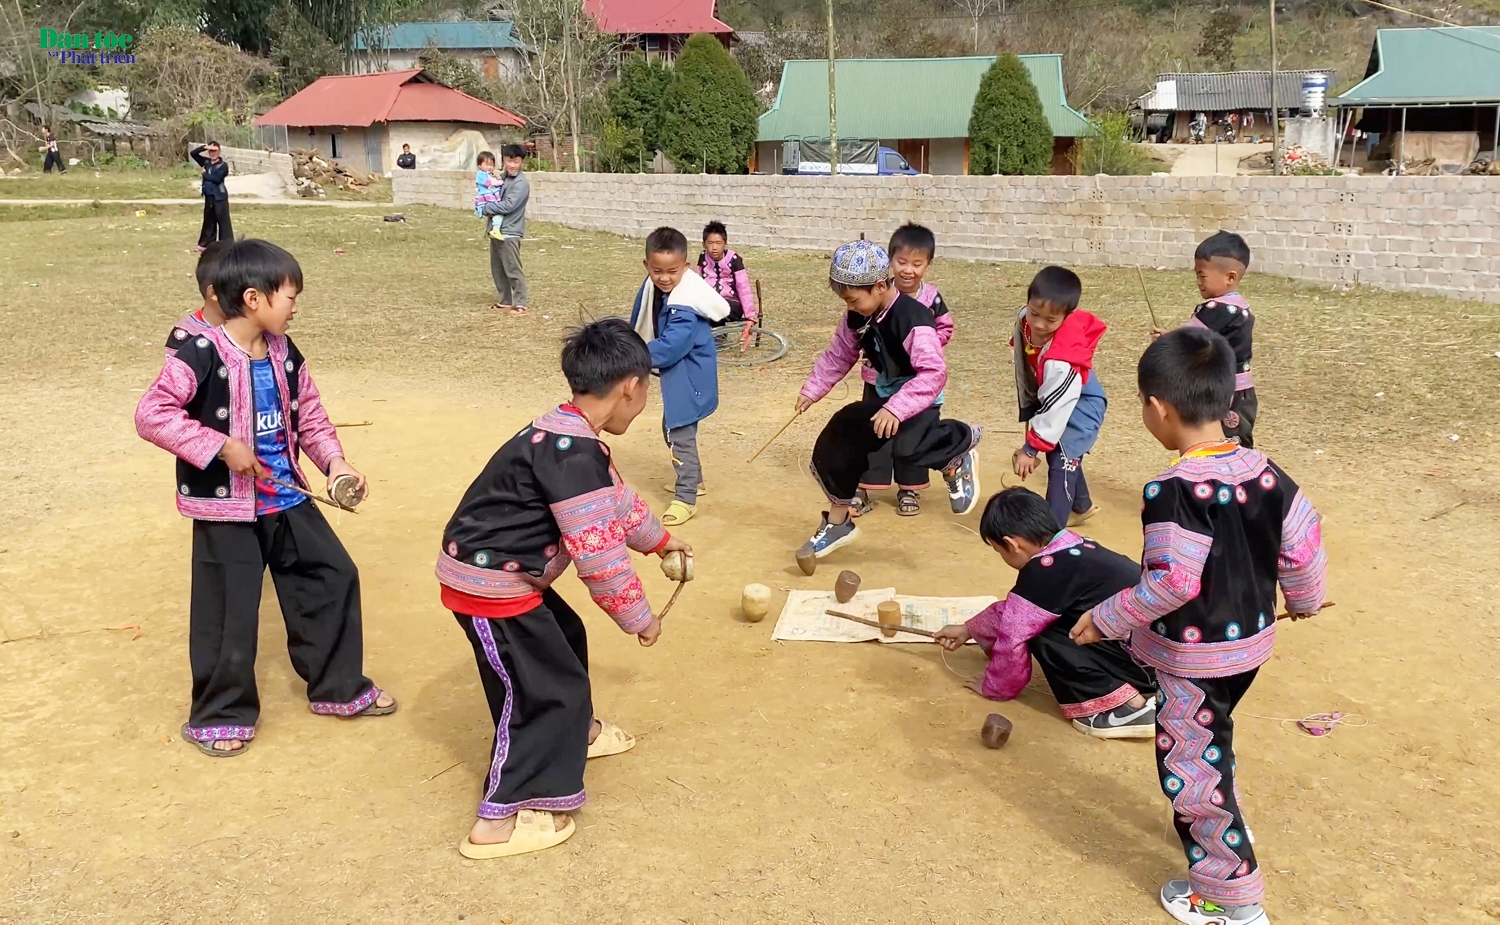 Một trò chơi dân gian mà bất kỳ cậu bé người Mông nào cũng biết chơi và rất yêu thích, là trò đánh “tù lu”. Các cậu bé đánh “tù lu” để thể hiện sức khỏe, độ khéo léo của mình trong việc đẽo gọt “tù lu”